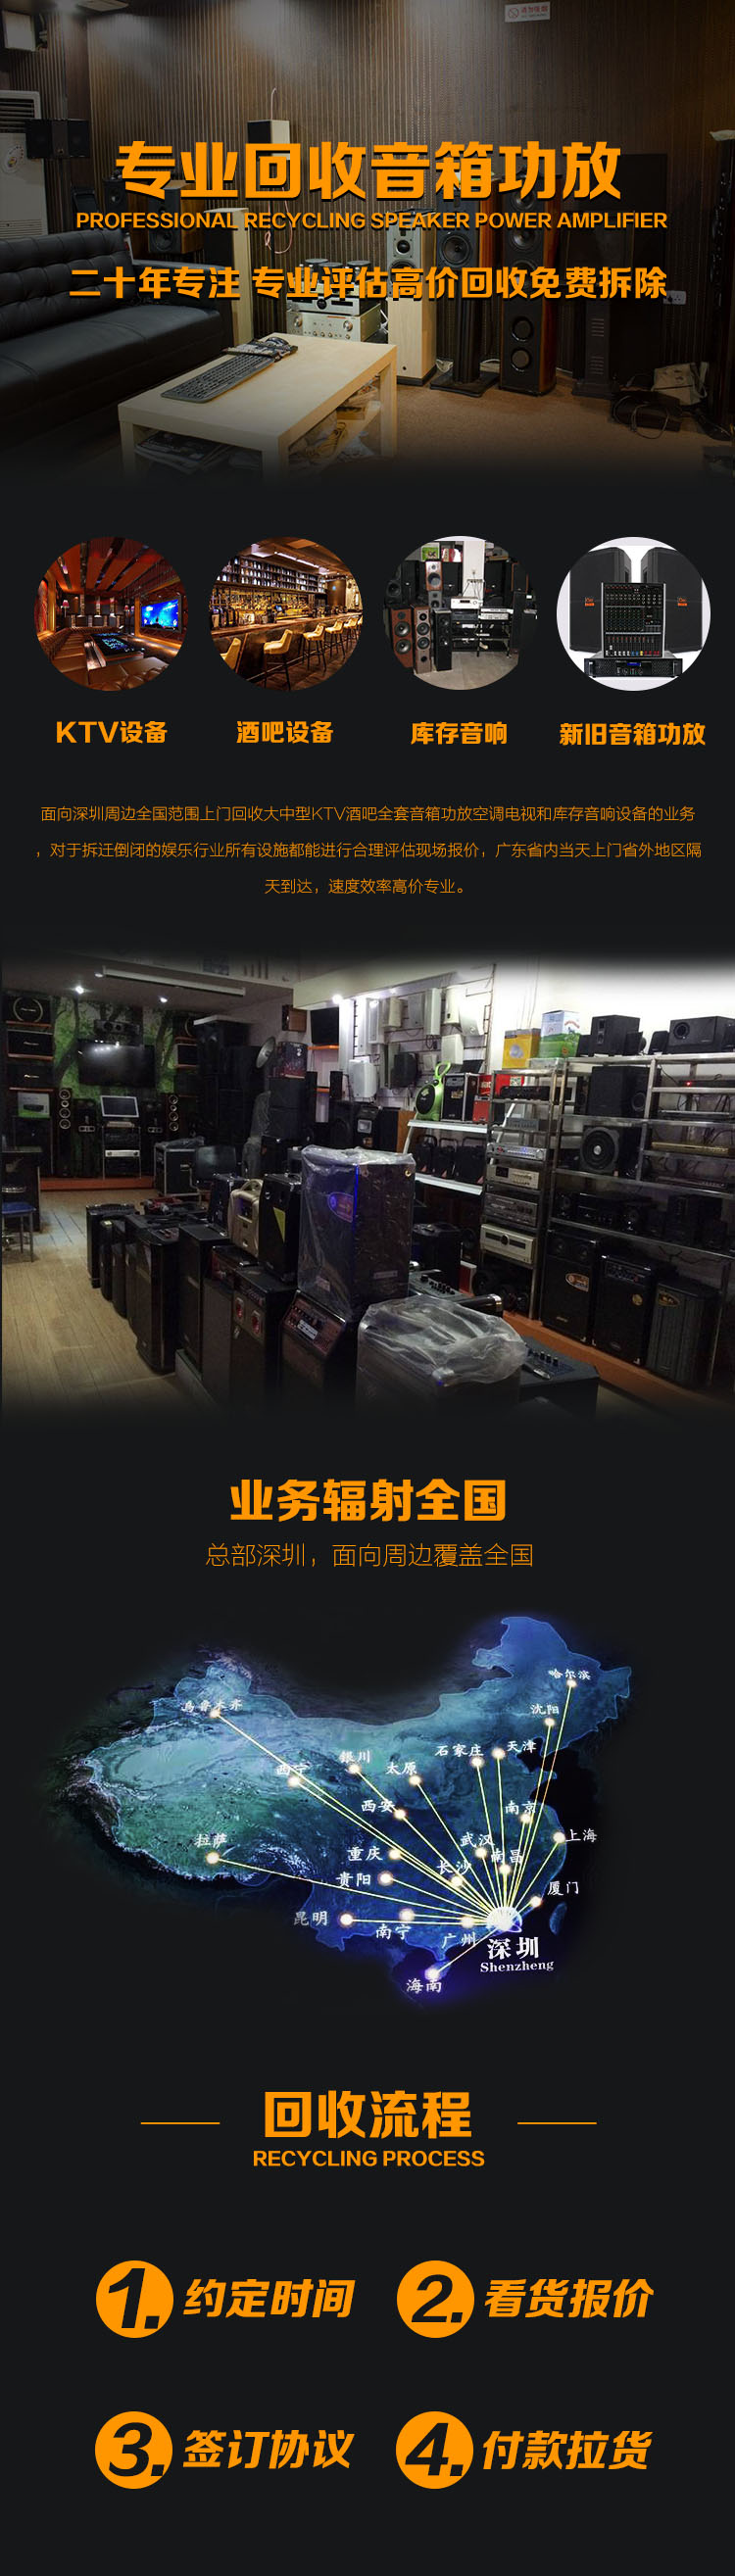 回收音响设备 深圳东莞惠州三地KTV酒吧回收